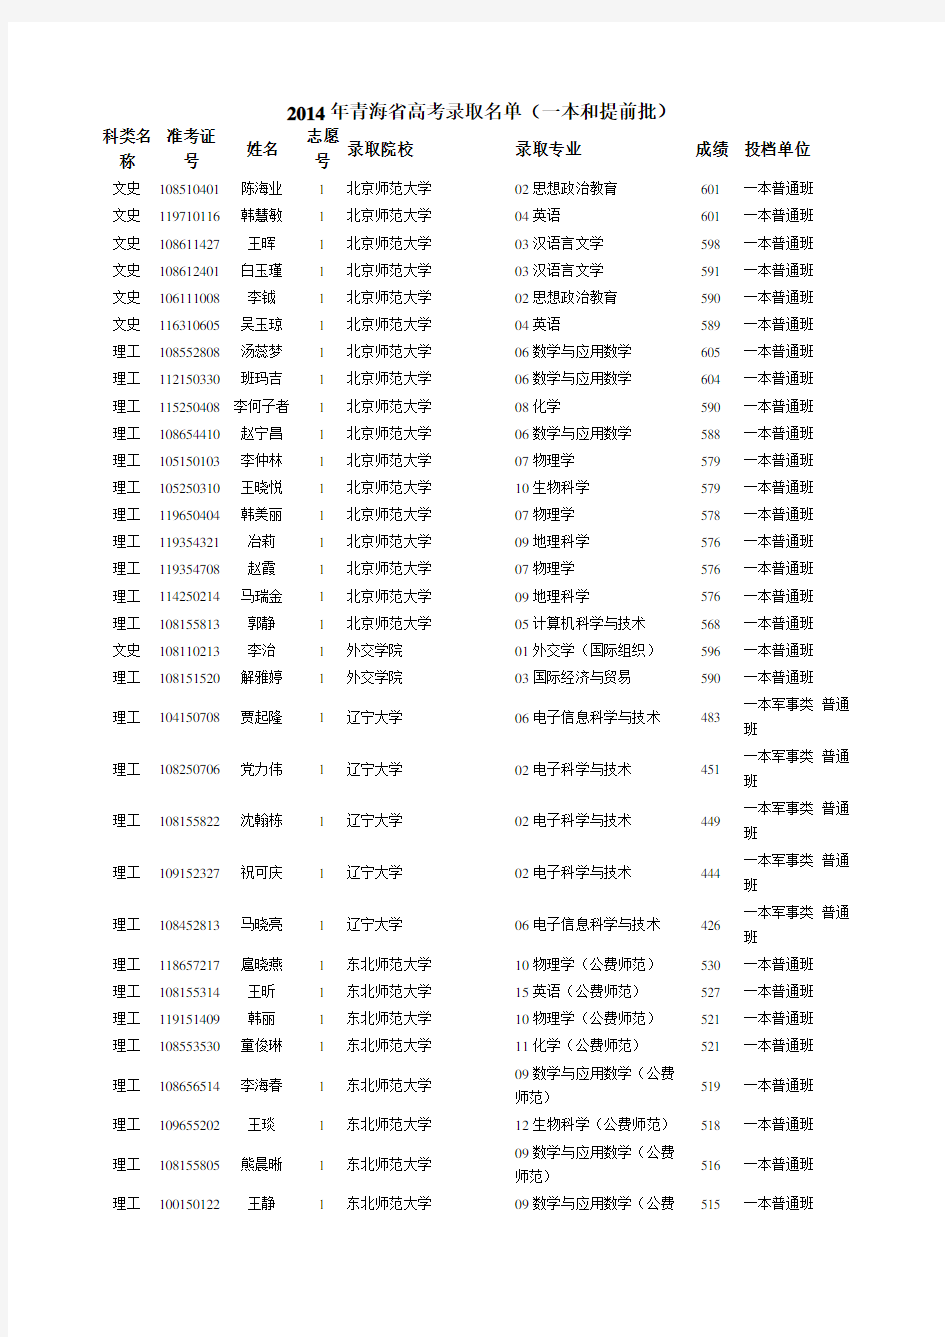 2014年青海省高考录取名单